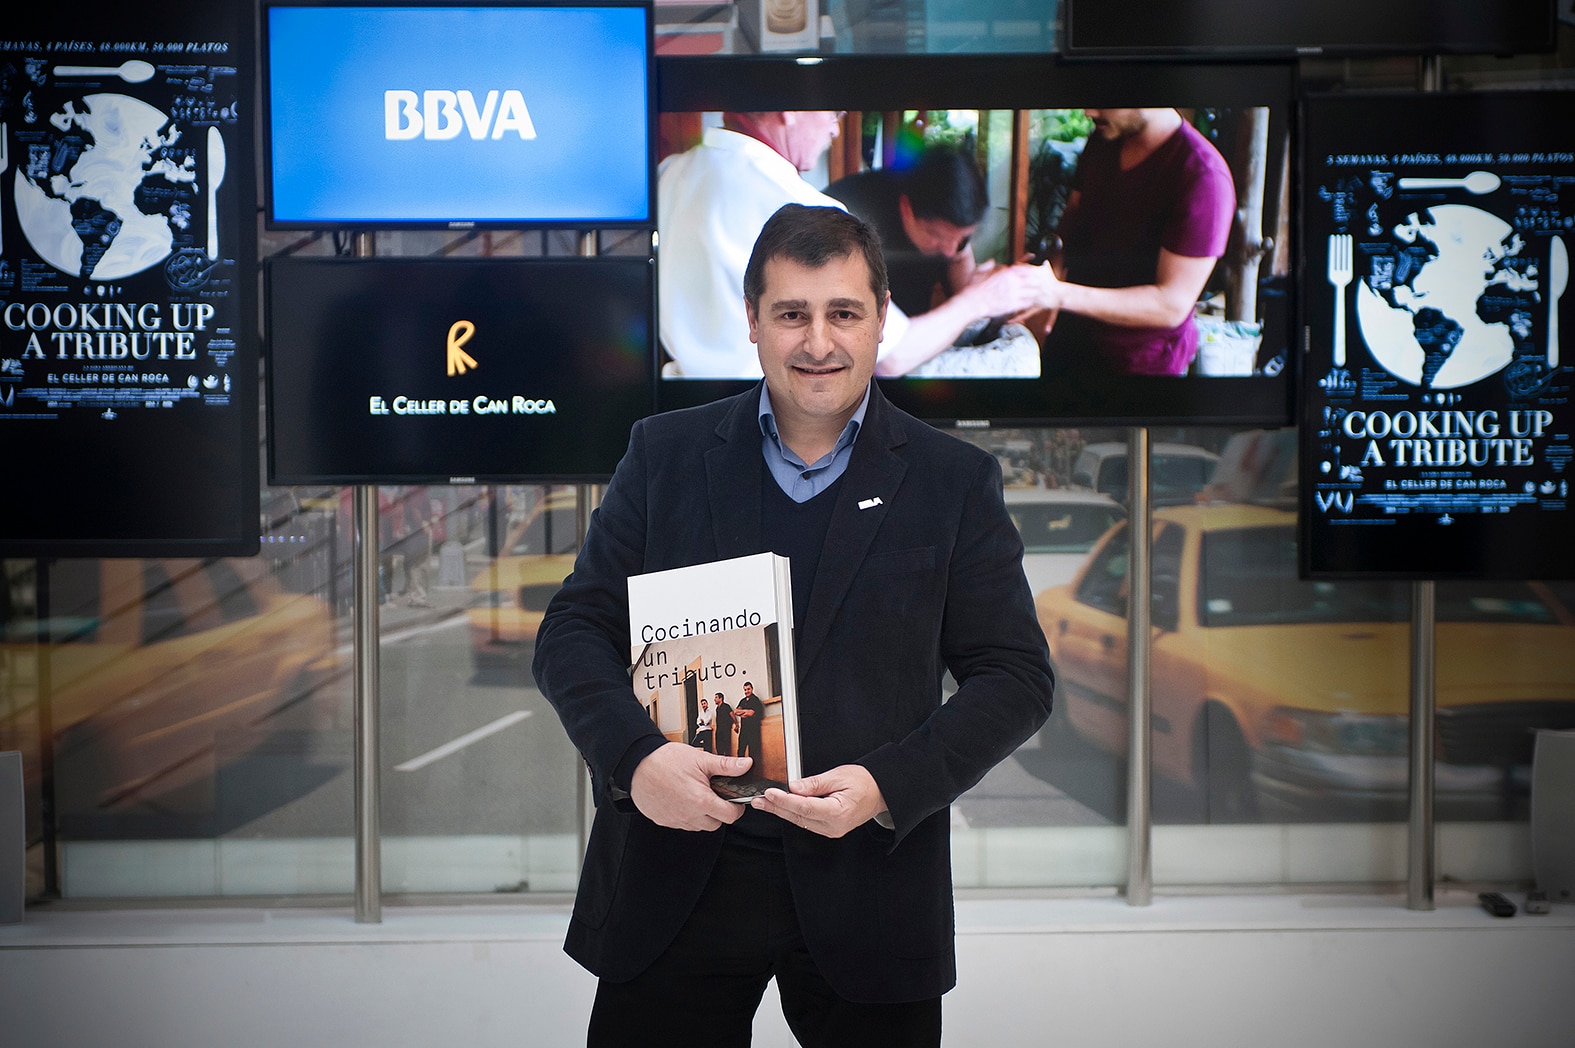 Fotografía de Josep Roca con el libro 'Cocinando un tributo', sobre la primera gira BBVA- El Celler de Can Roca